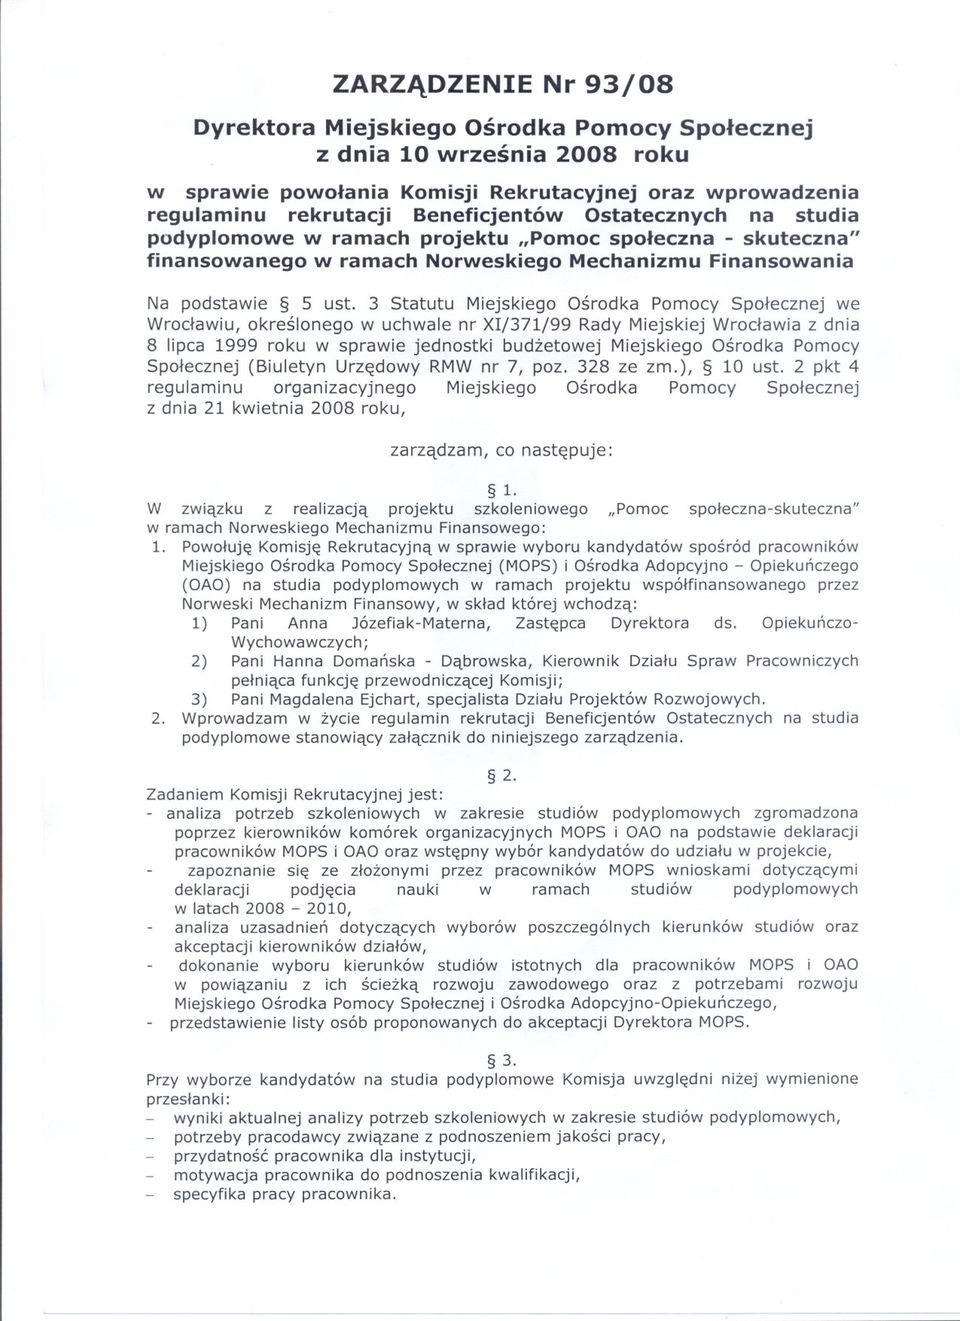 3 Statutu Miejskiego Osrodka Pomocy Spolecznej we Wroclawiu, okreslonego w uchwale nr XI/371/99 Rady Miejskiej Wroclawia z dnia 8 lipca 1999 roku w sprawie jednostki budzetowej Miejskiego Osrodka